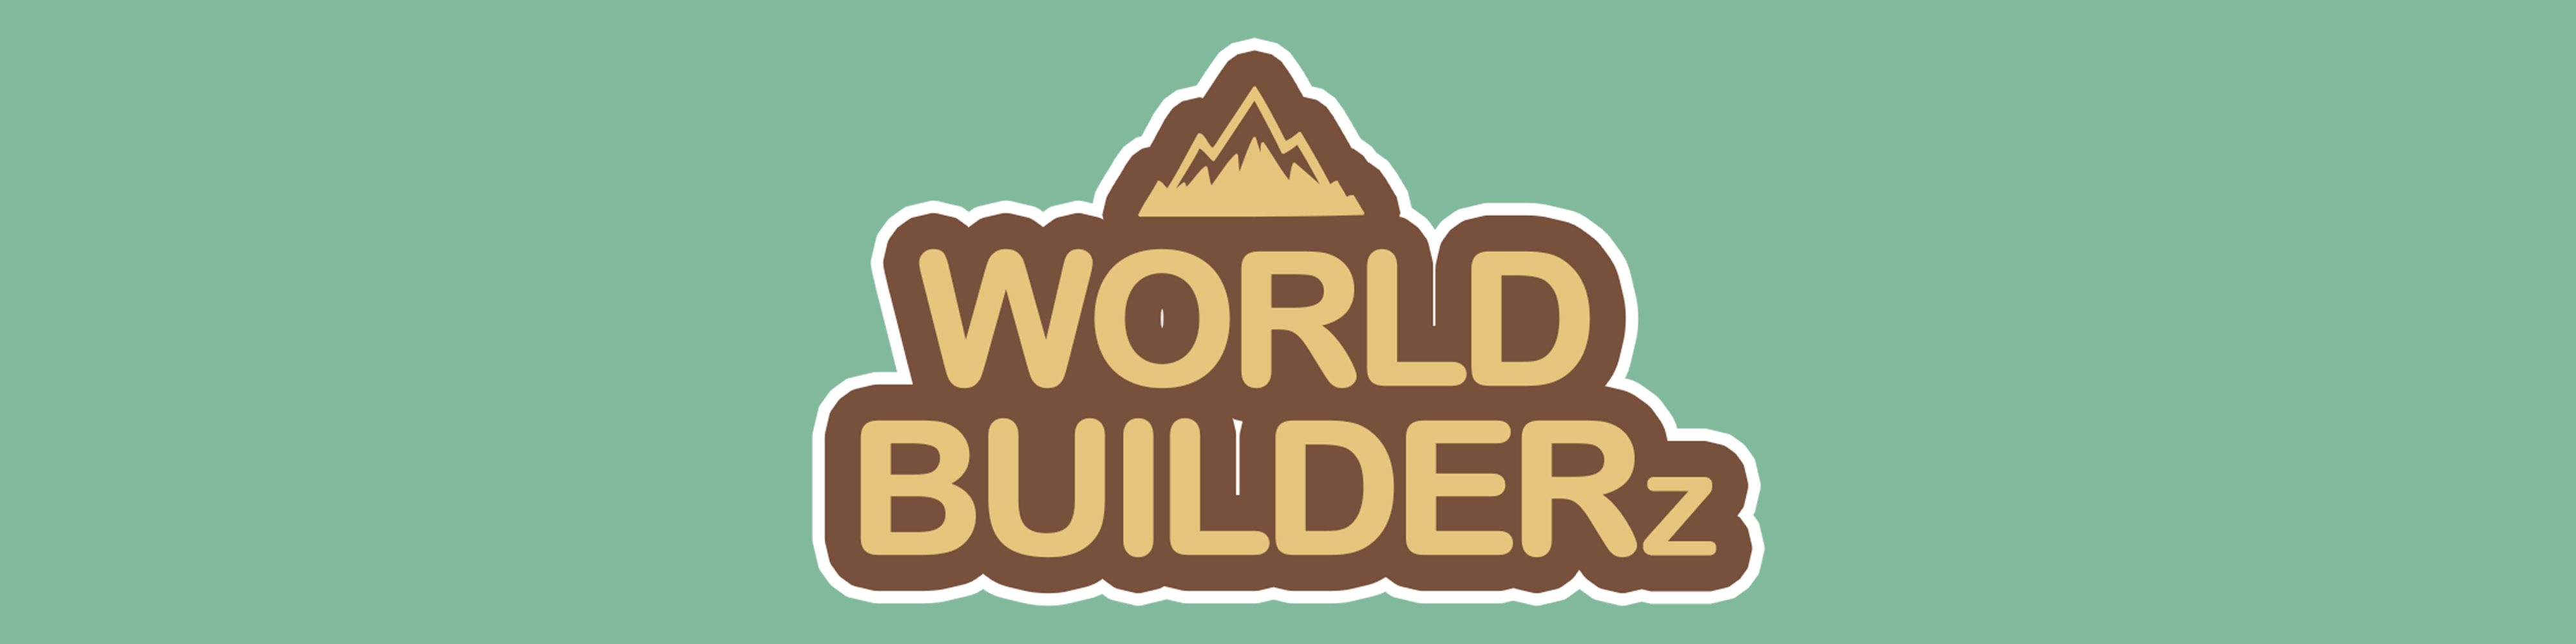 WORLD BUILDERz